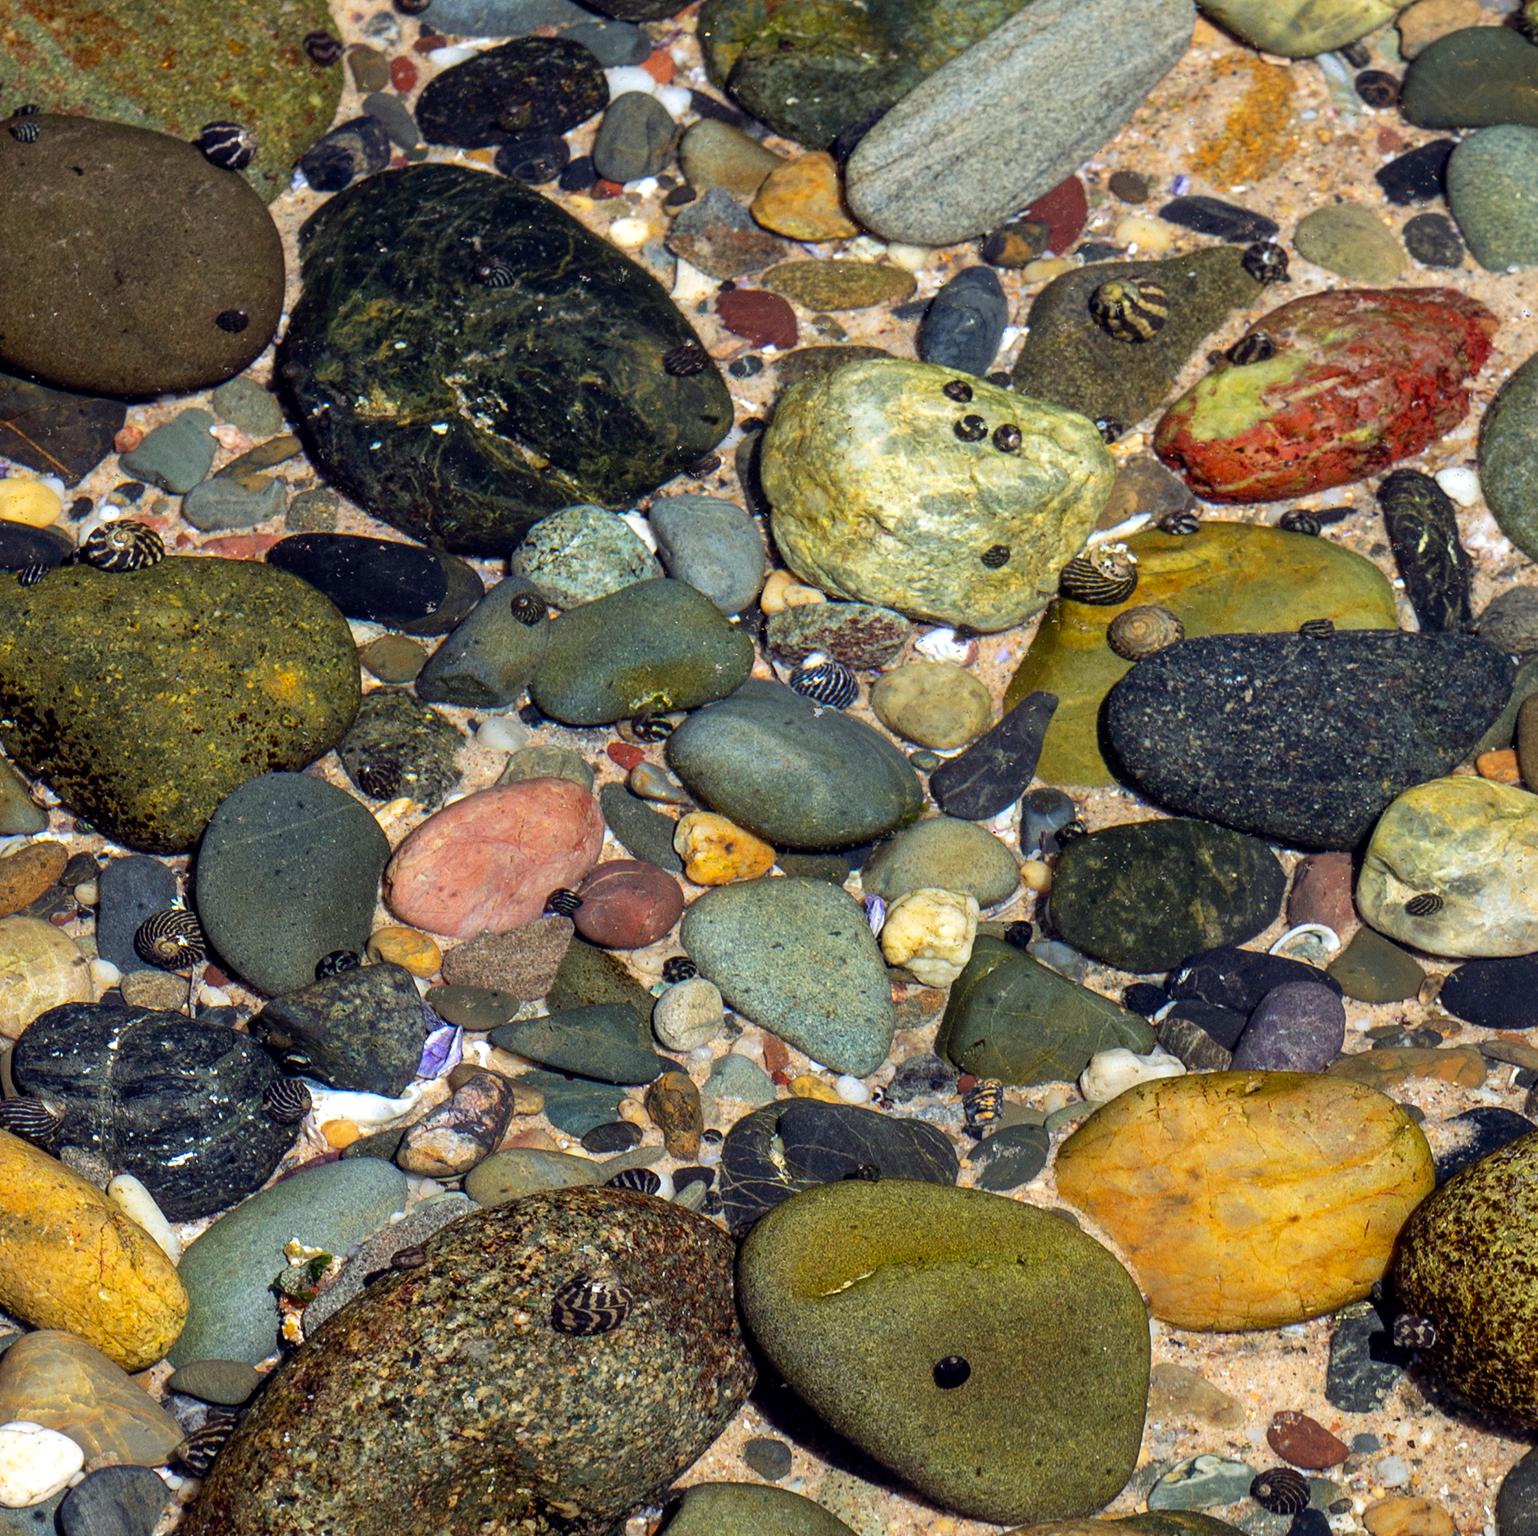 Gezeitentümpel aus vielfarbigen Steinen. Yamba, Australien, 2019.
Foto von Cosmo Condina von farbigen Steinen in einem Gezeitentümpel. Yamba, Australien
Archivpigmentdruck, 19